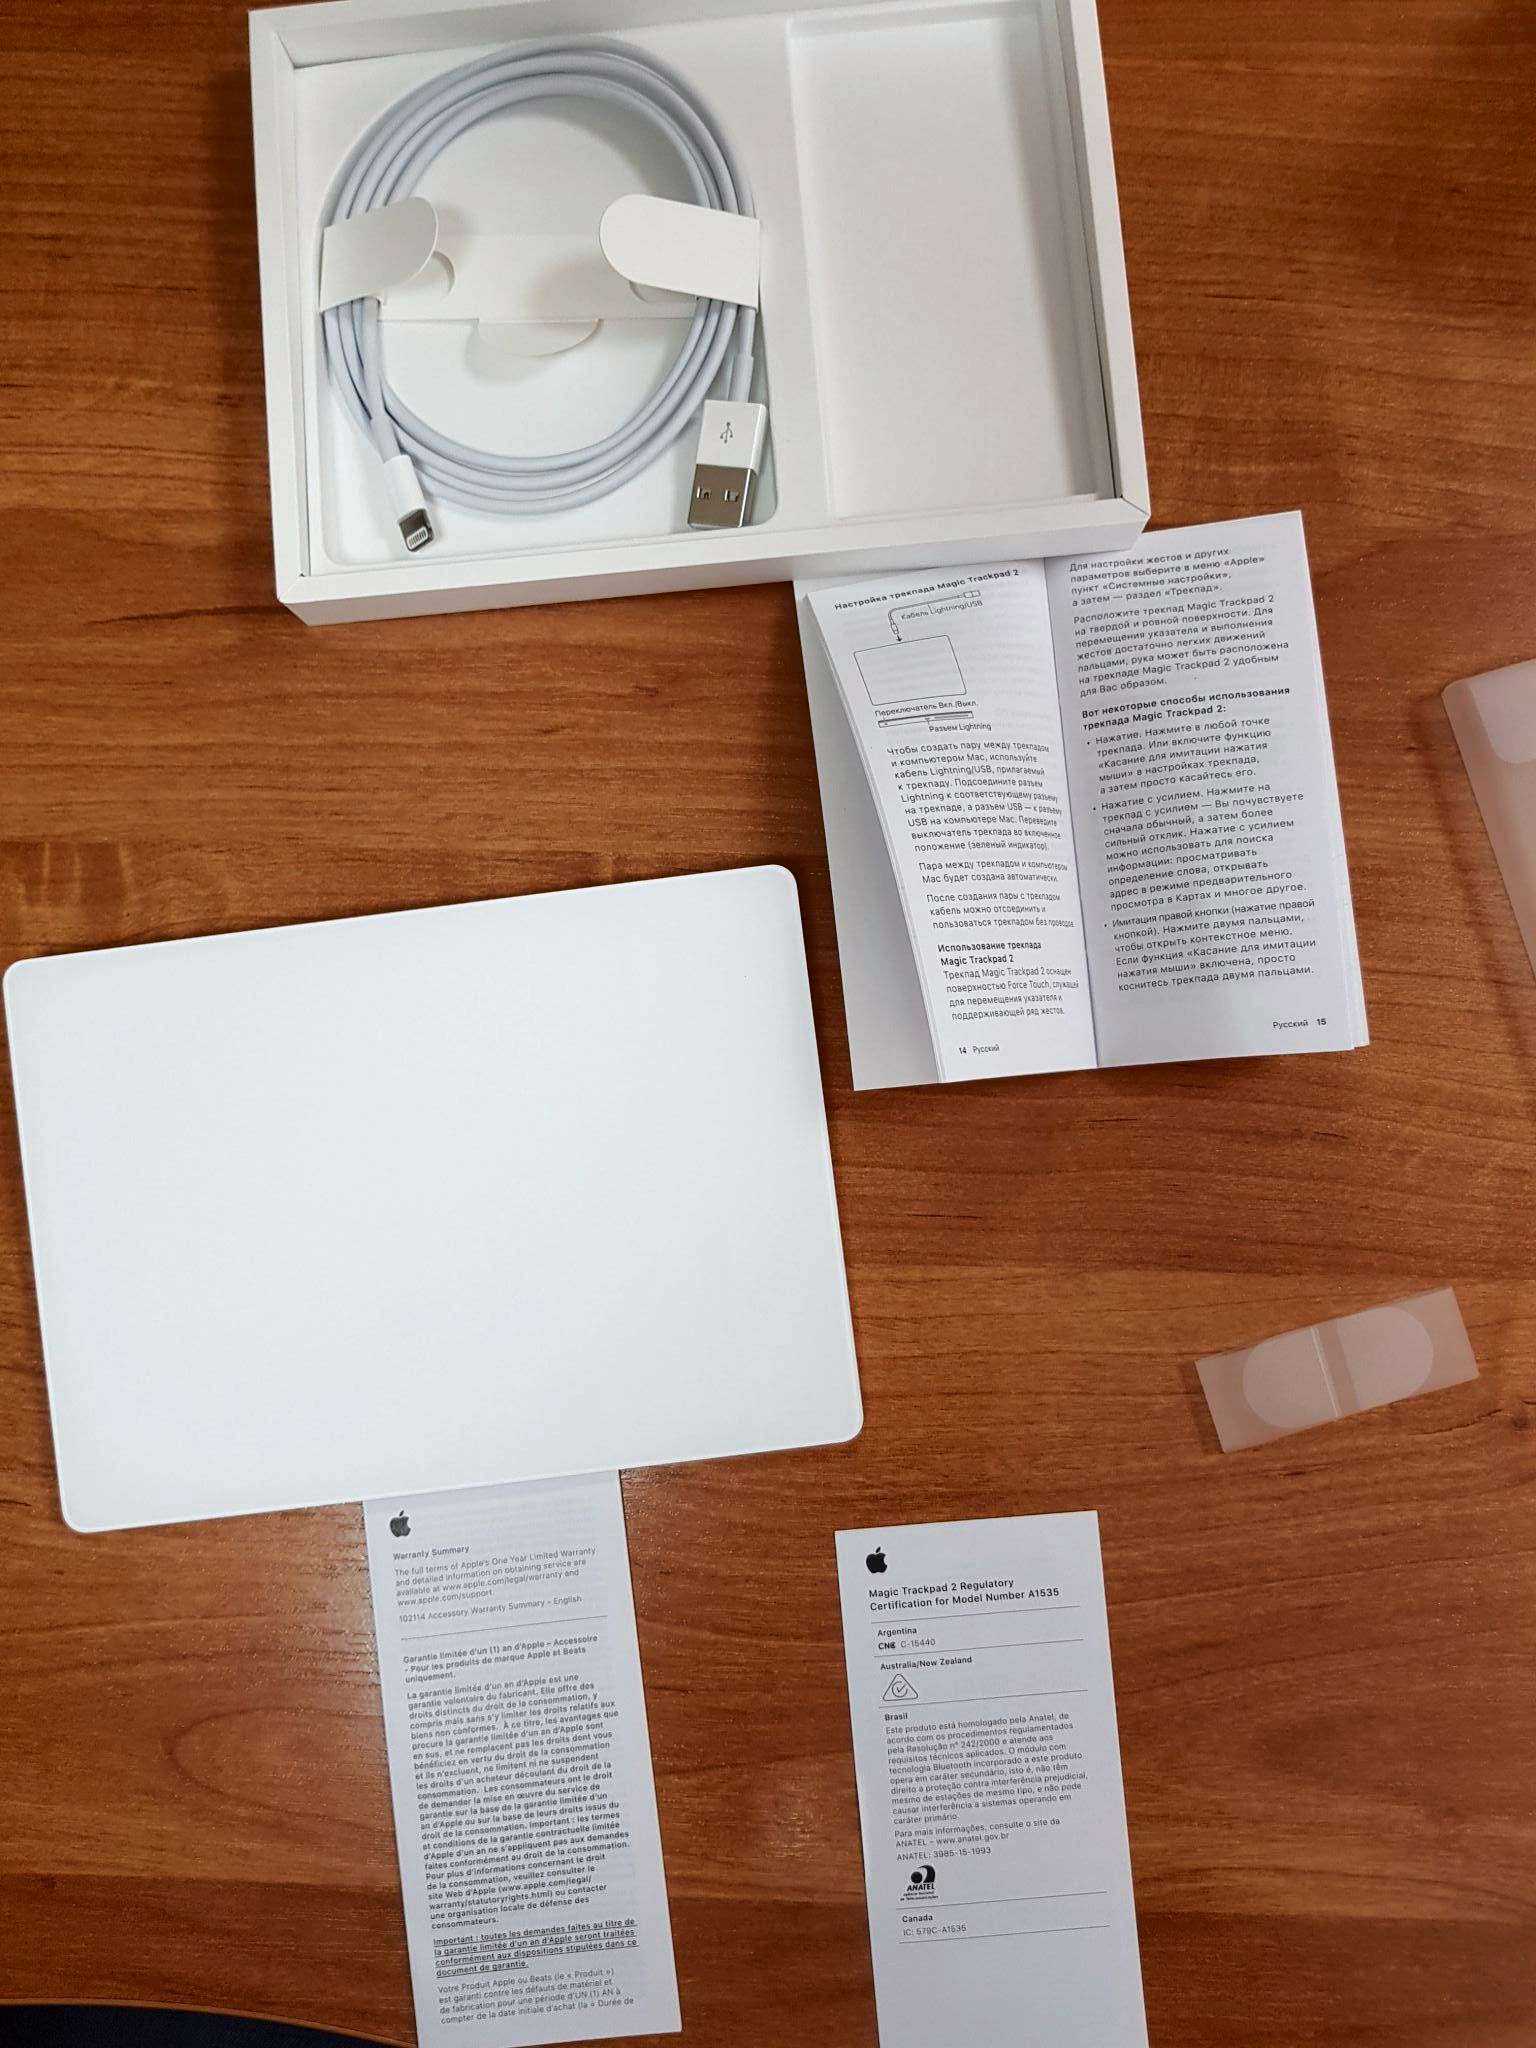 Apple magic trackpad silver bluetooth купить по акционной цене , отзывы и обзоры.